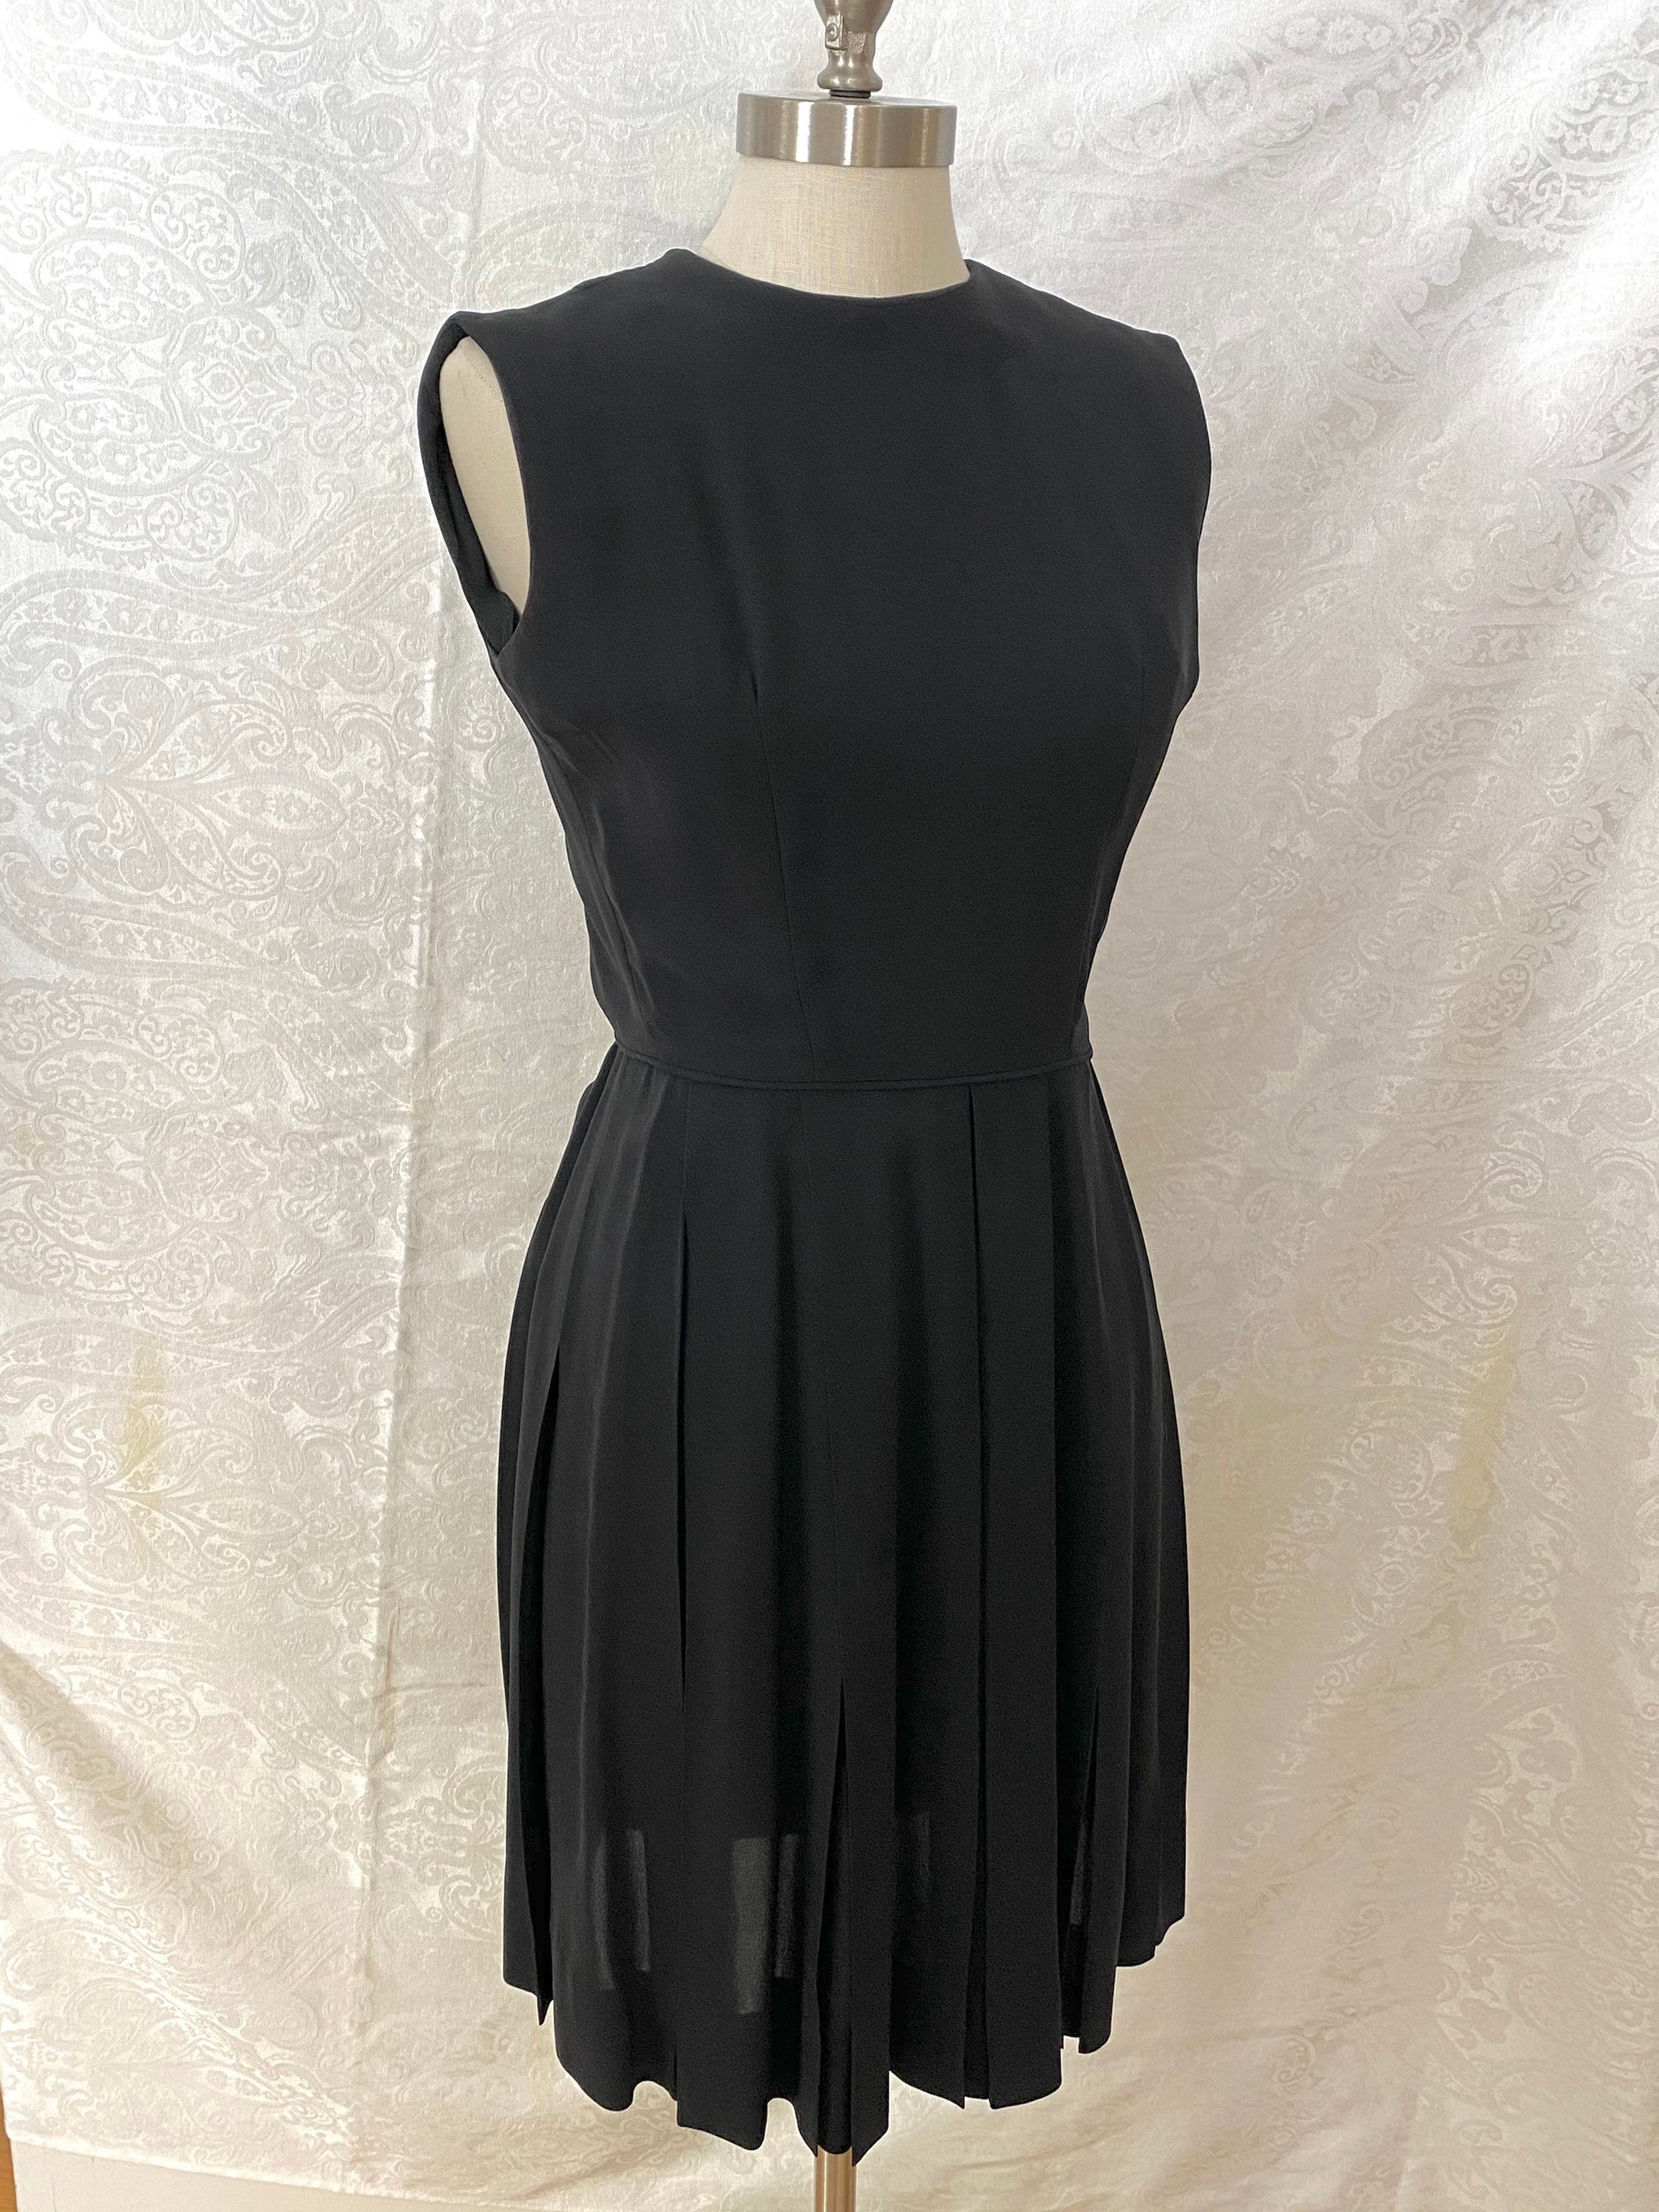 Vintage Little Black Dress Pleated Skirt Sleeveless 1960s Formal